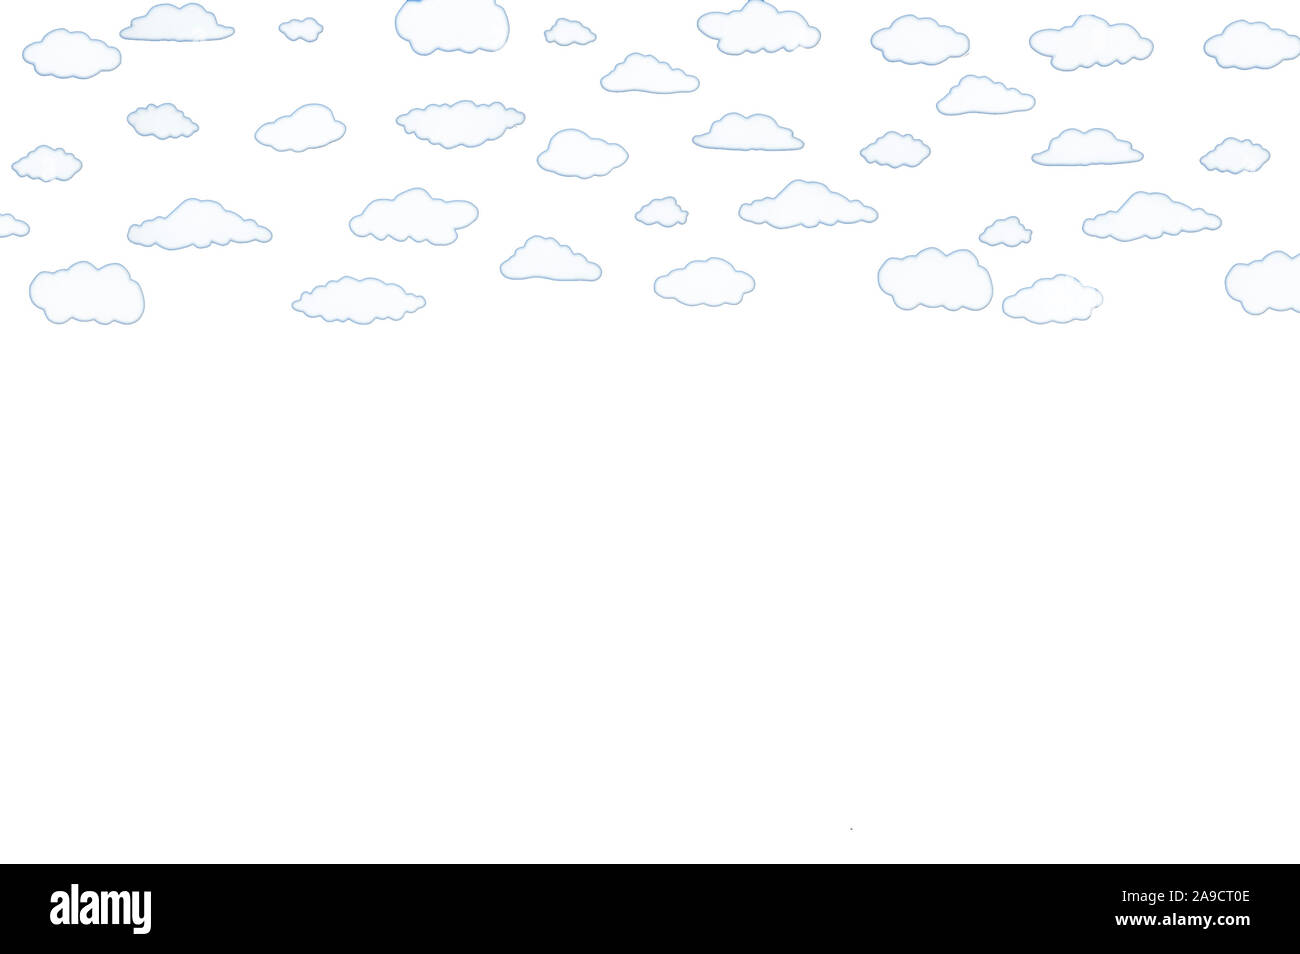 Illustrazione di nuvole bianche su sfondo bianco Foto Stock